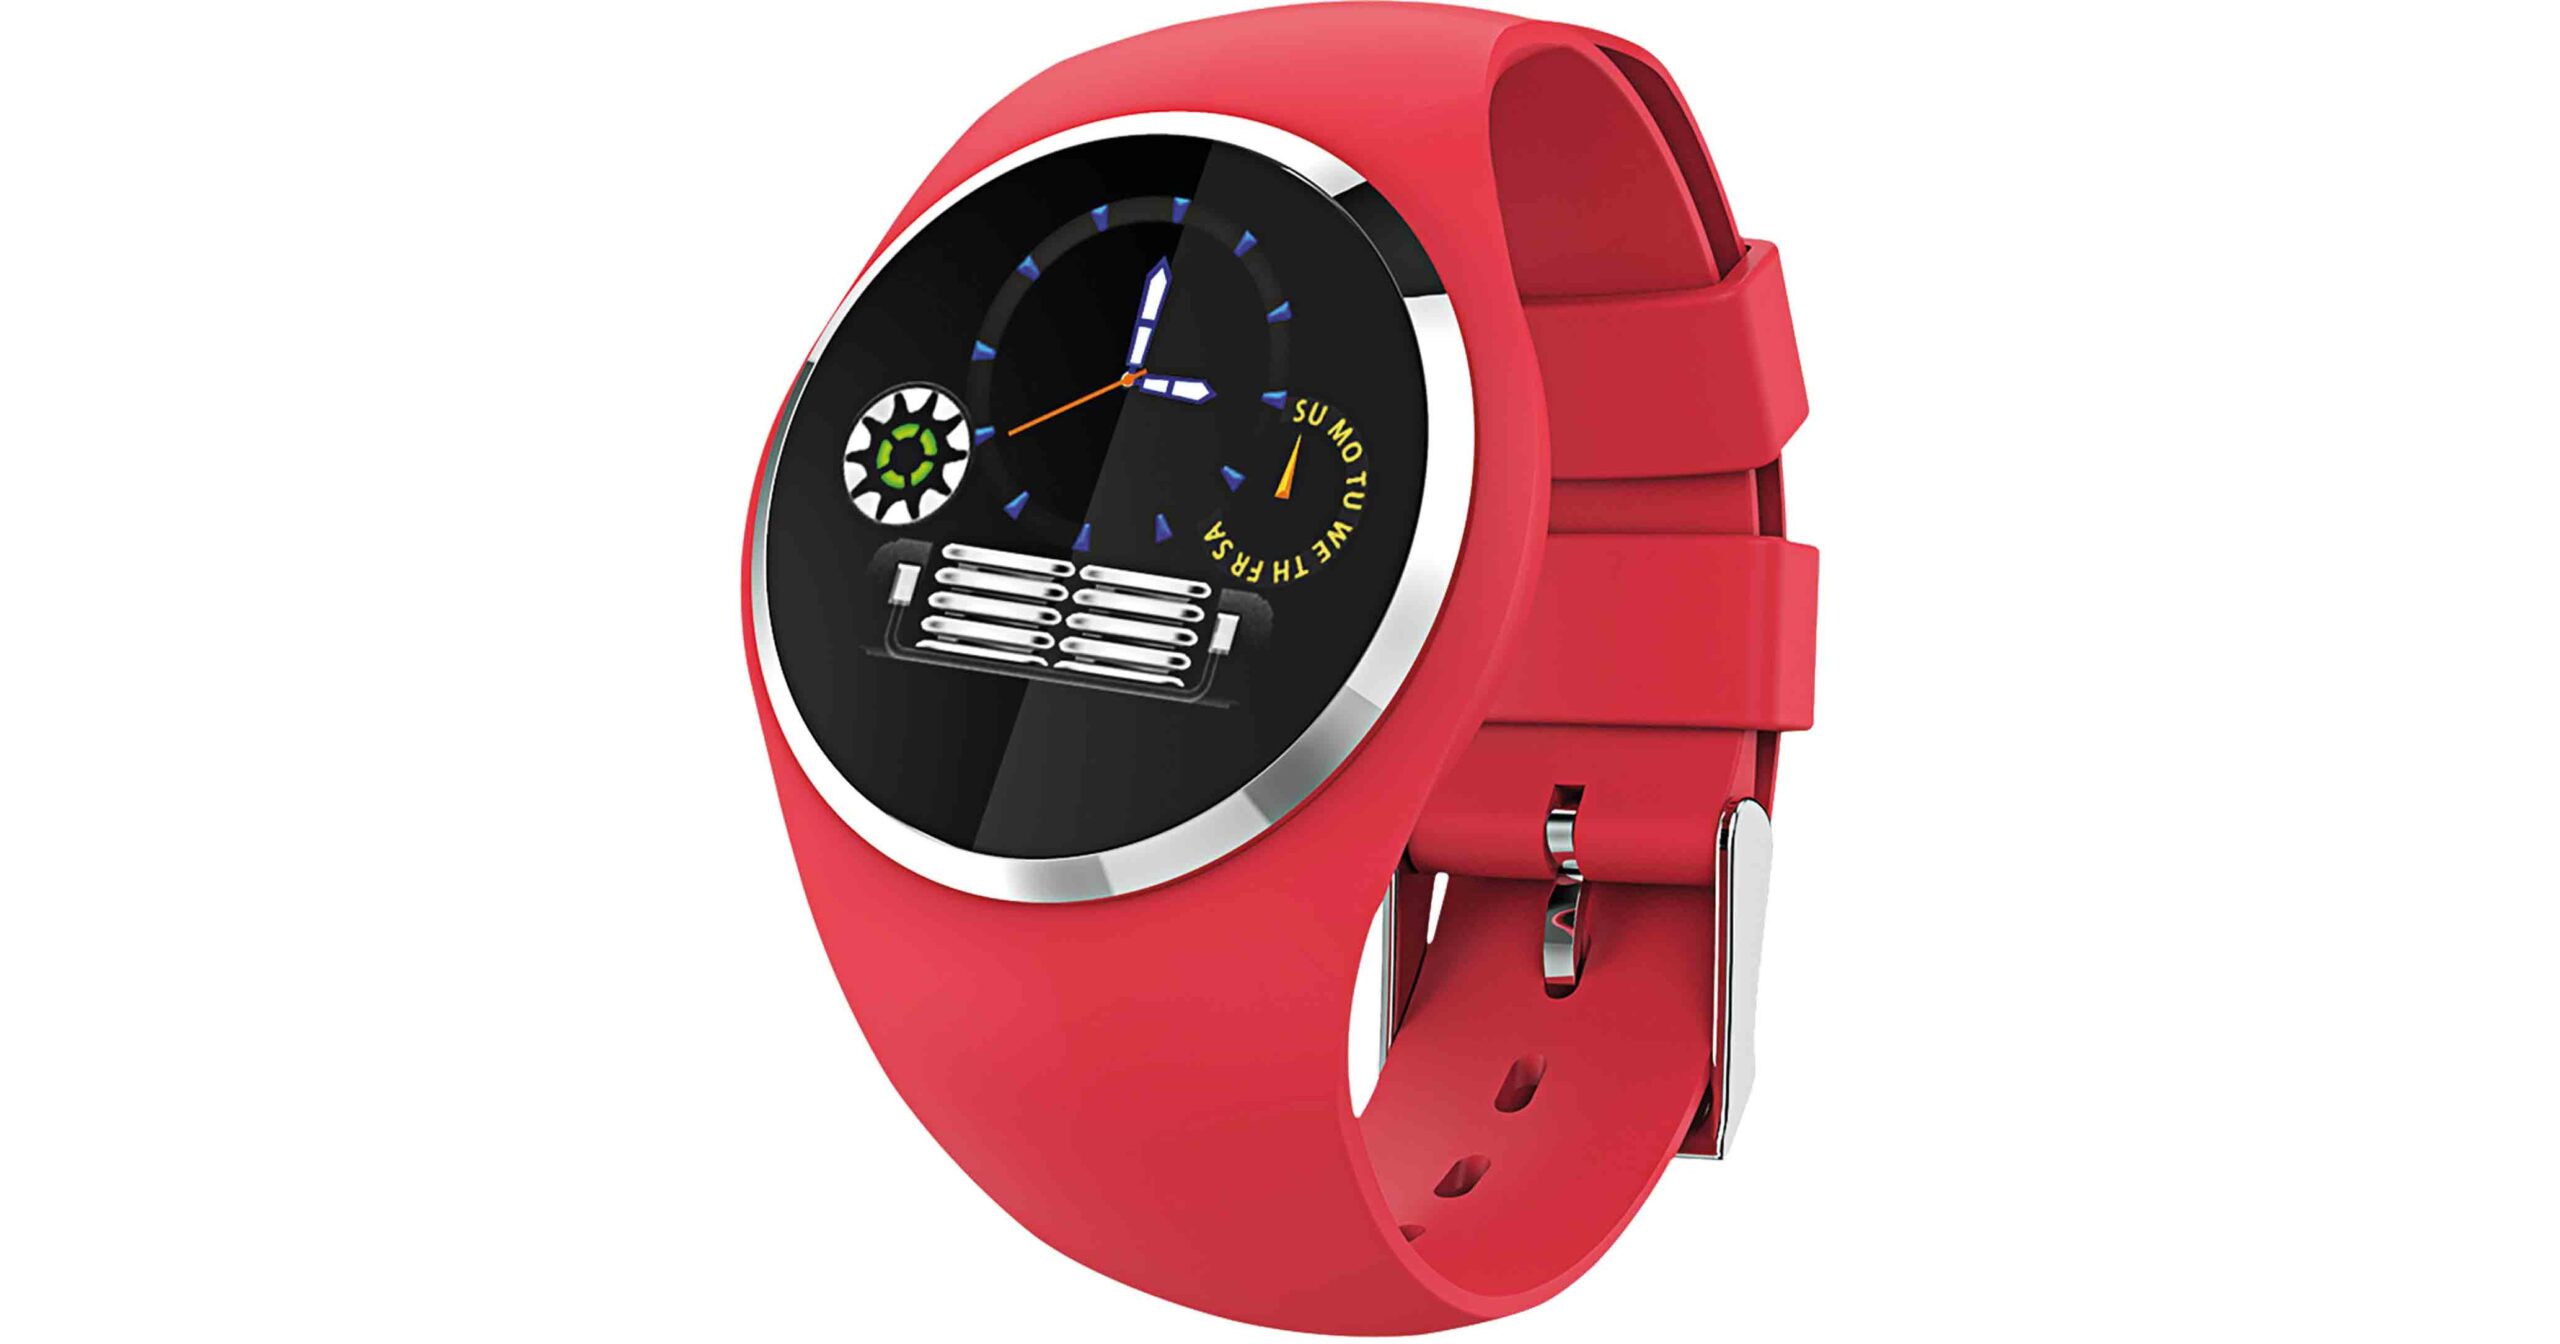 Das sportliche Smartband mit rundem Farbdisplay gibt es für 99 Euro UVP. Das Silikon-Armband ist in 5 stylischen Farben erhältlich.